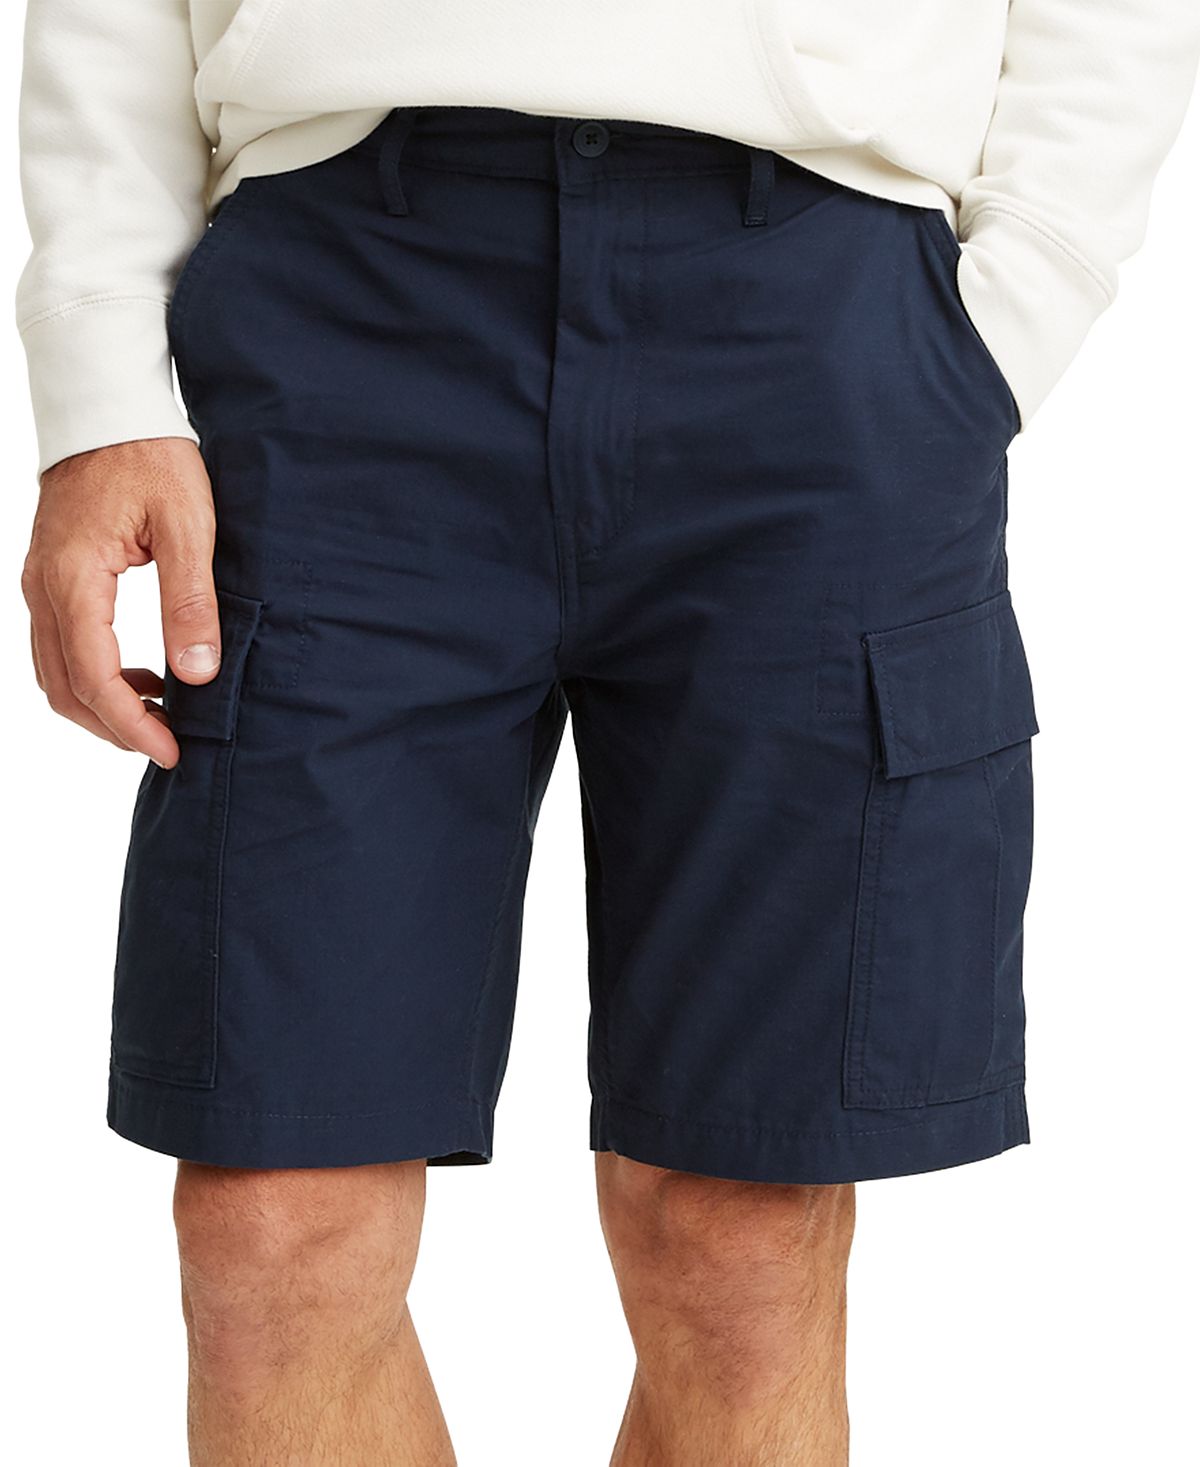 универсальные брюки карго больших и высоких размеров dockers Мужские шорты-карго свободного кроя для больших и высоких размеров Levi's, мульти